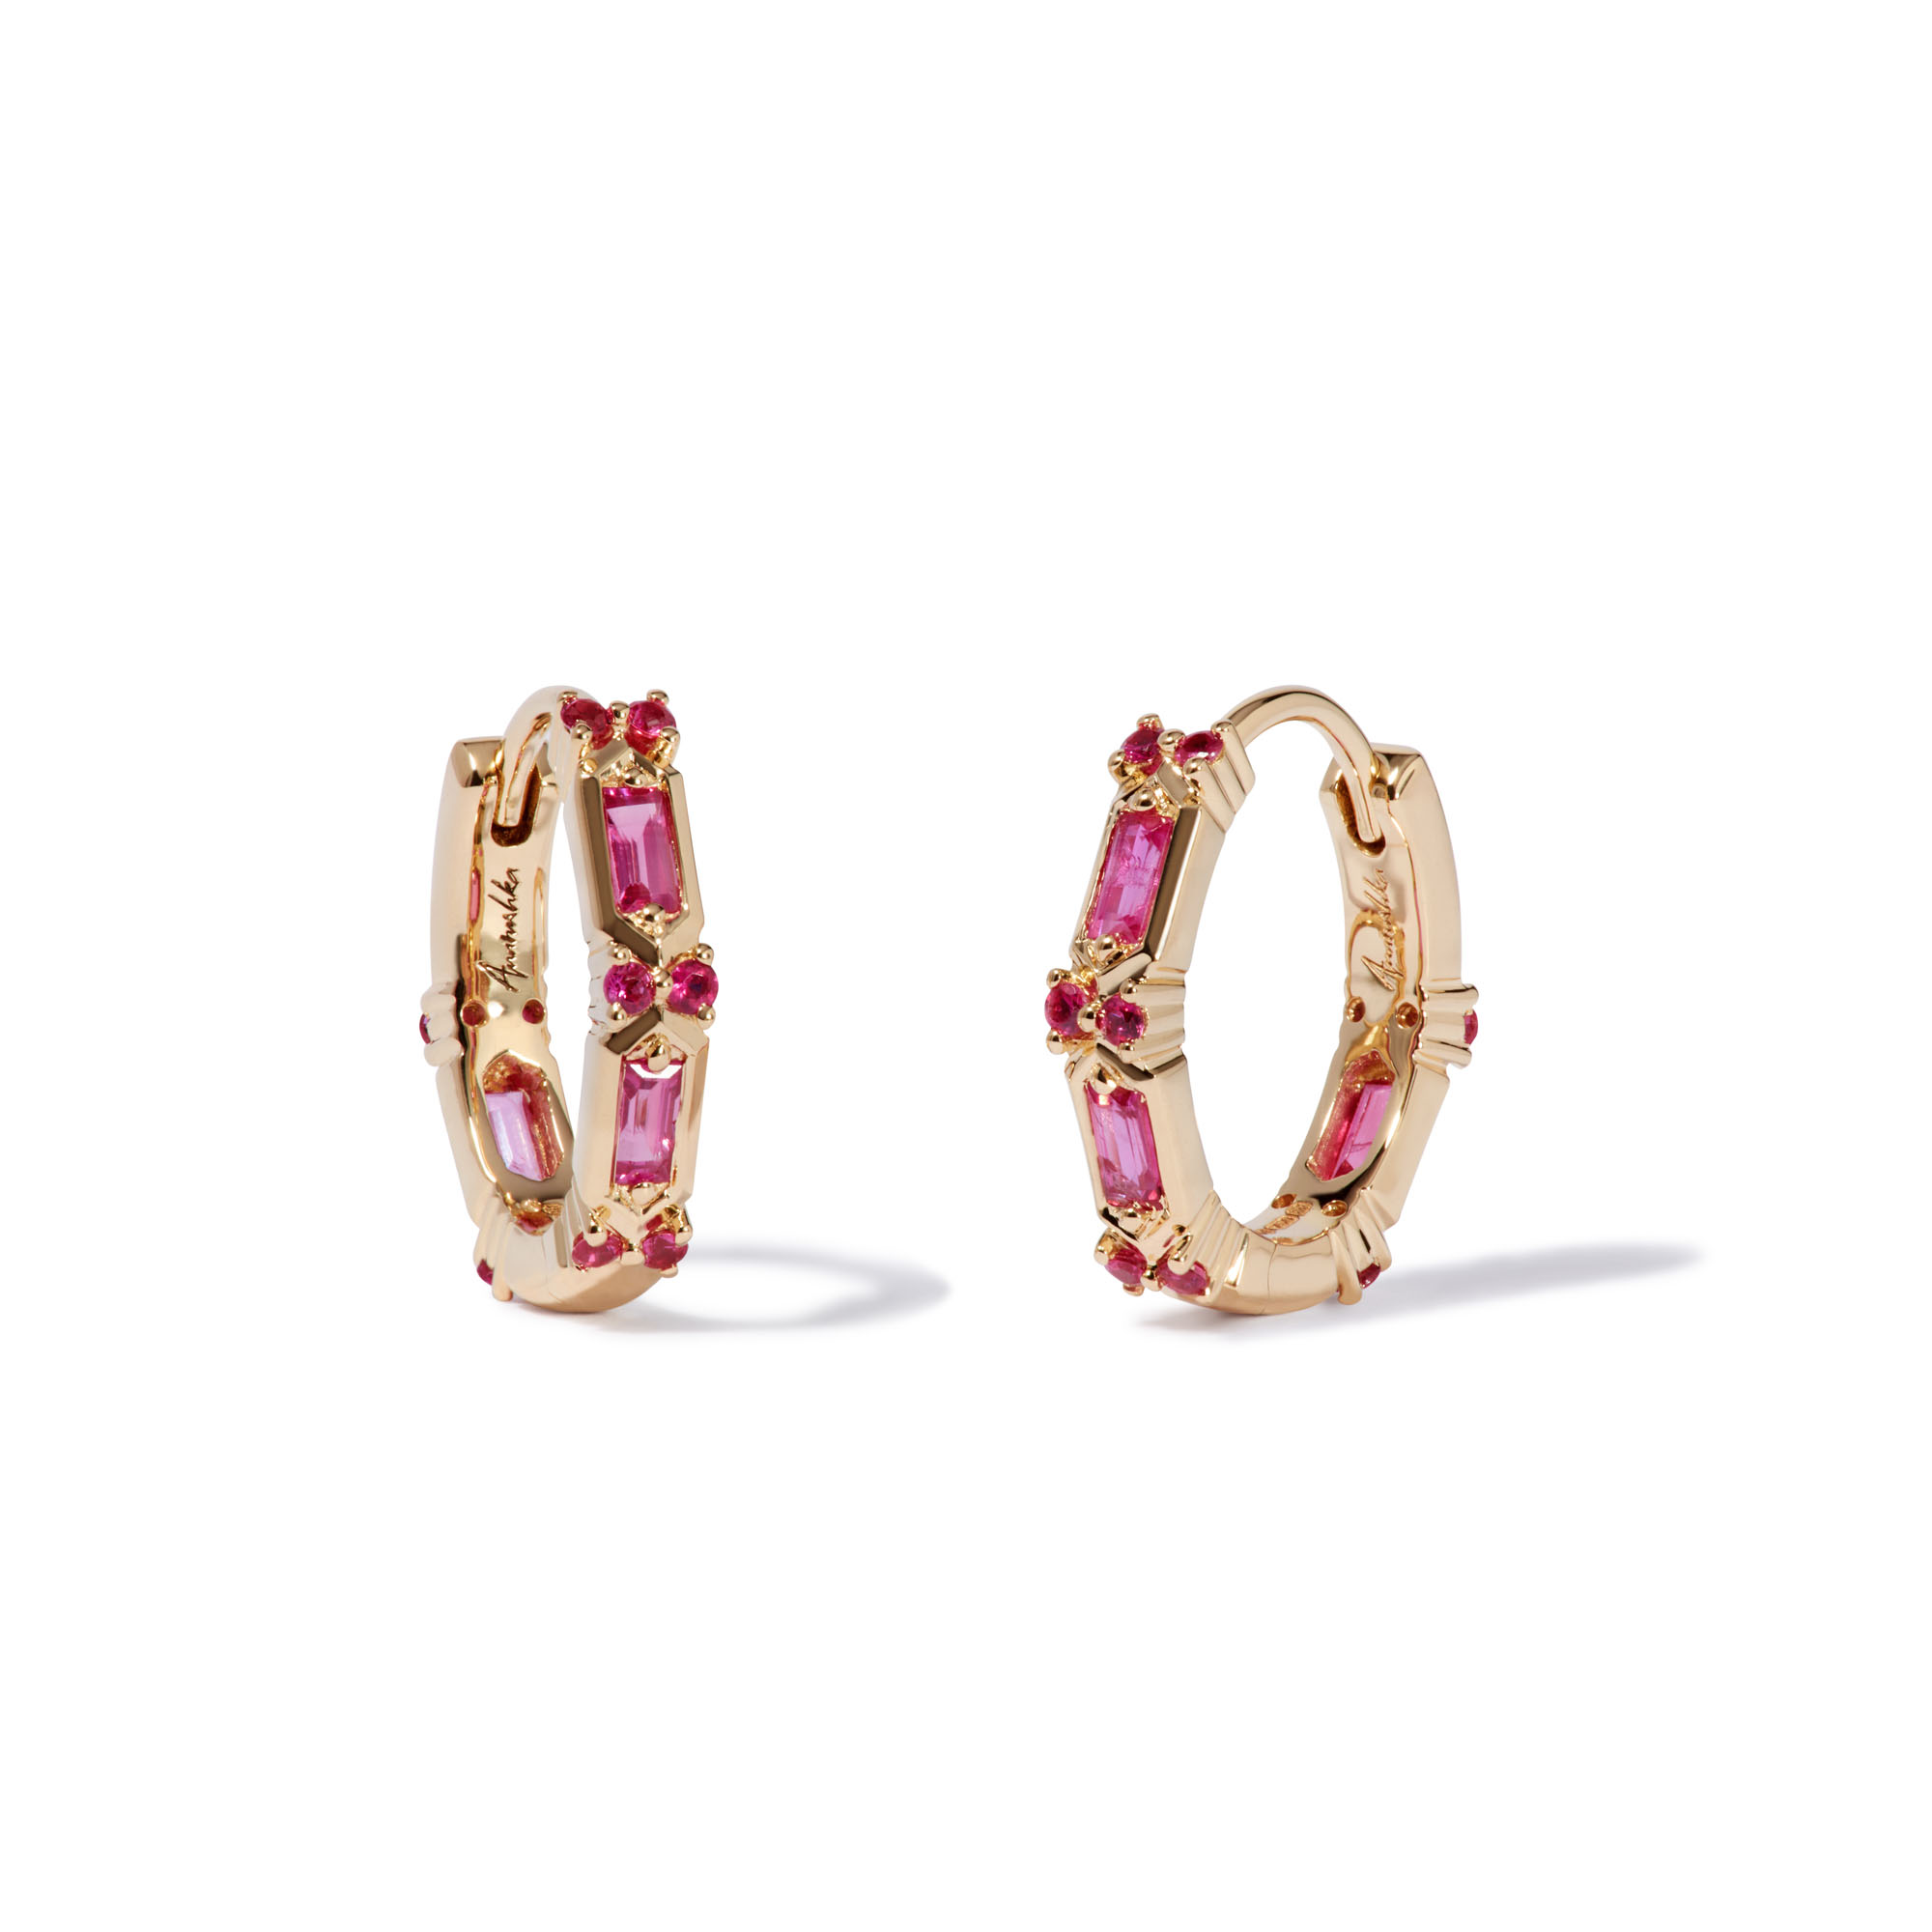 Buy Pink Earrings for Women by Vendsy Online  Ajiocom